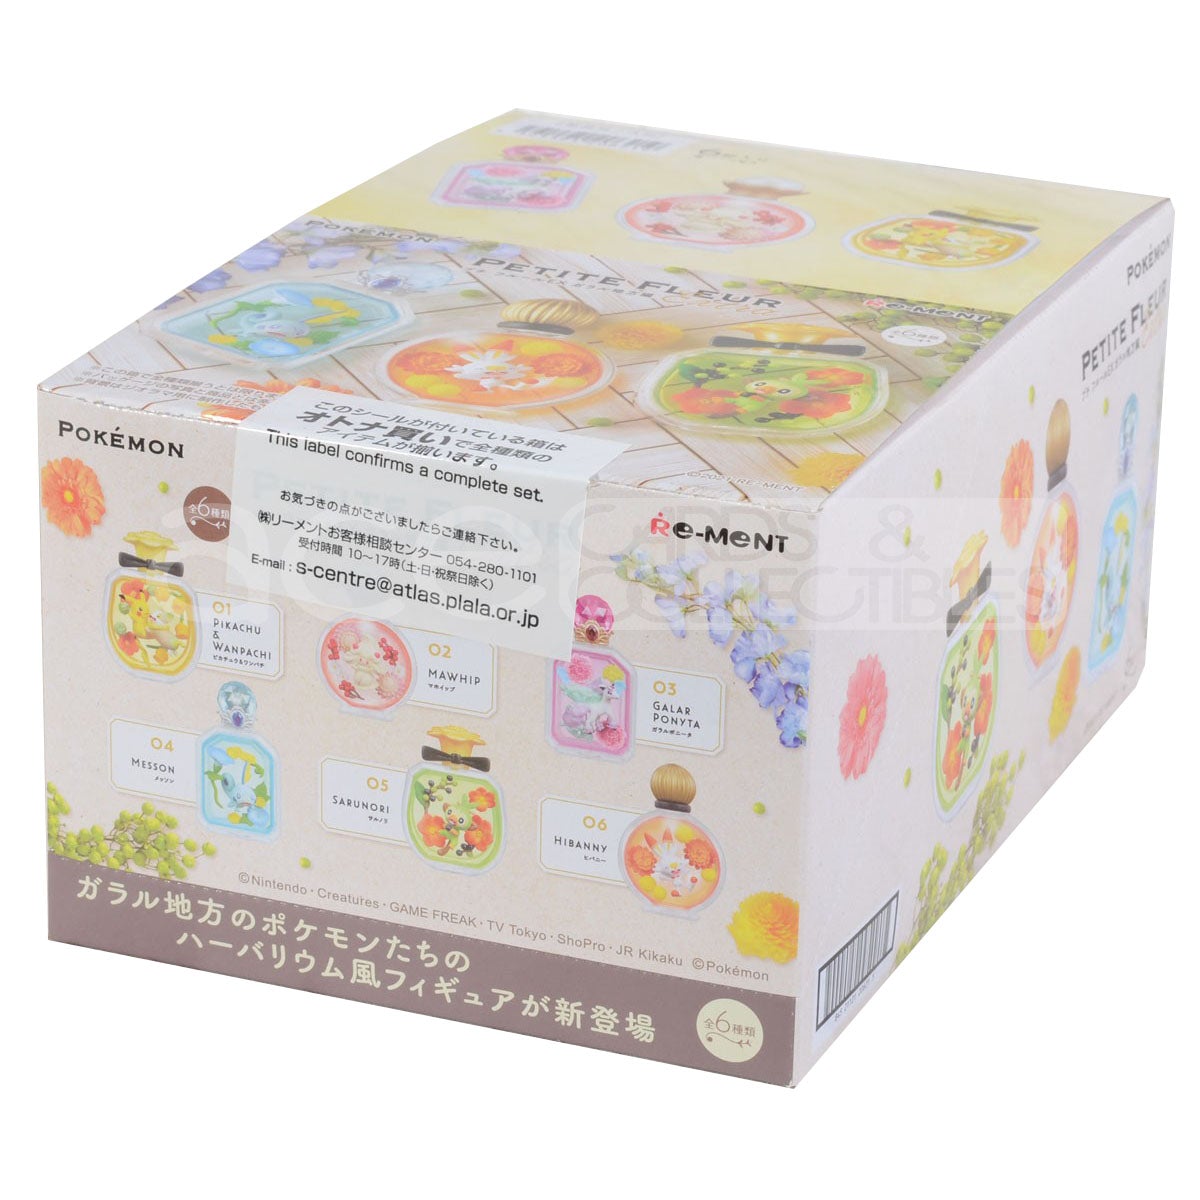 Re-Ment Pokemon Petite Fleur Ex-Galar Region-Single Box (Random)-Re-Ment-Ace Cards & Collectibles